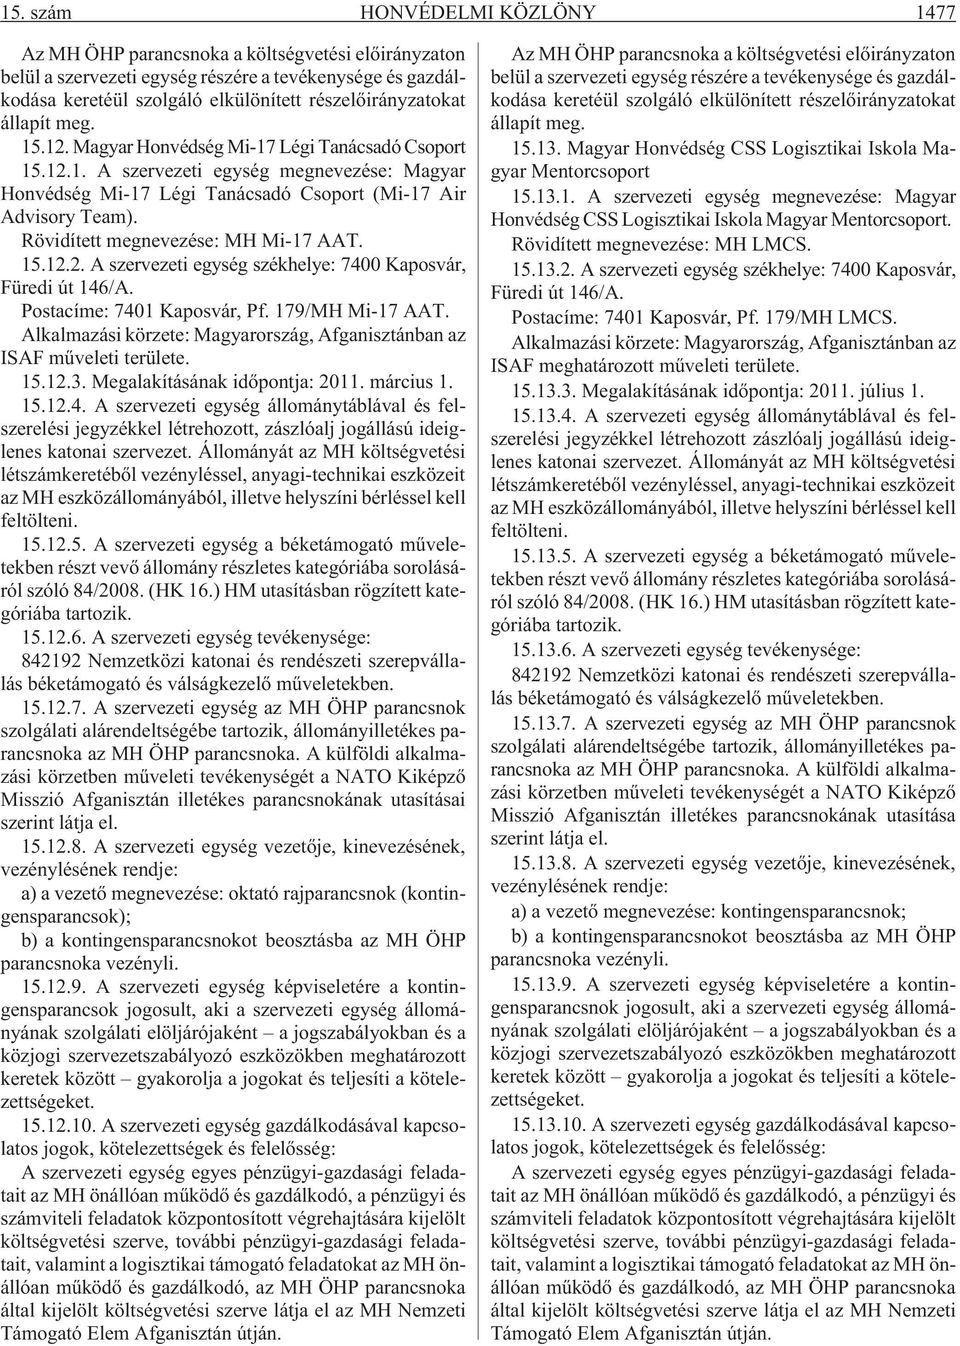 Rövidített megnevezése: MH Mi-17 AAT. 15.12.2. A szervezeti egység székhelye: 7400 Kaposvár, Füredi út 146/A. Postacíme: 7401 Kaposvár, Pf. 179/MH Mi-17 AAT.